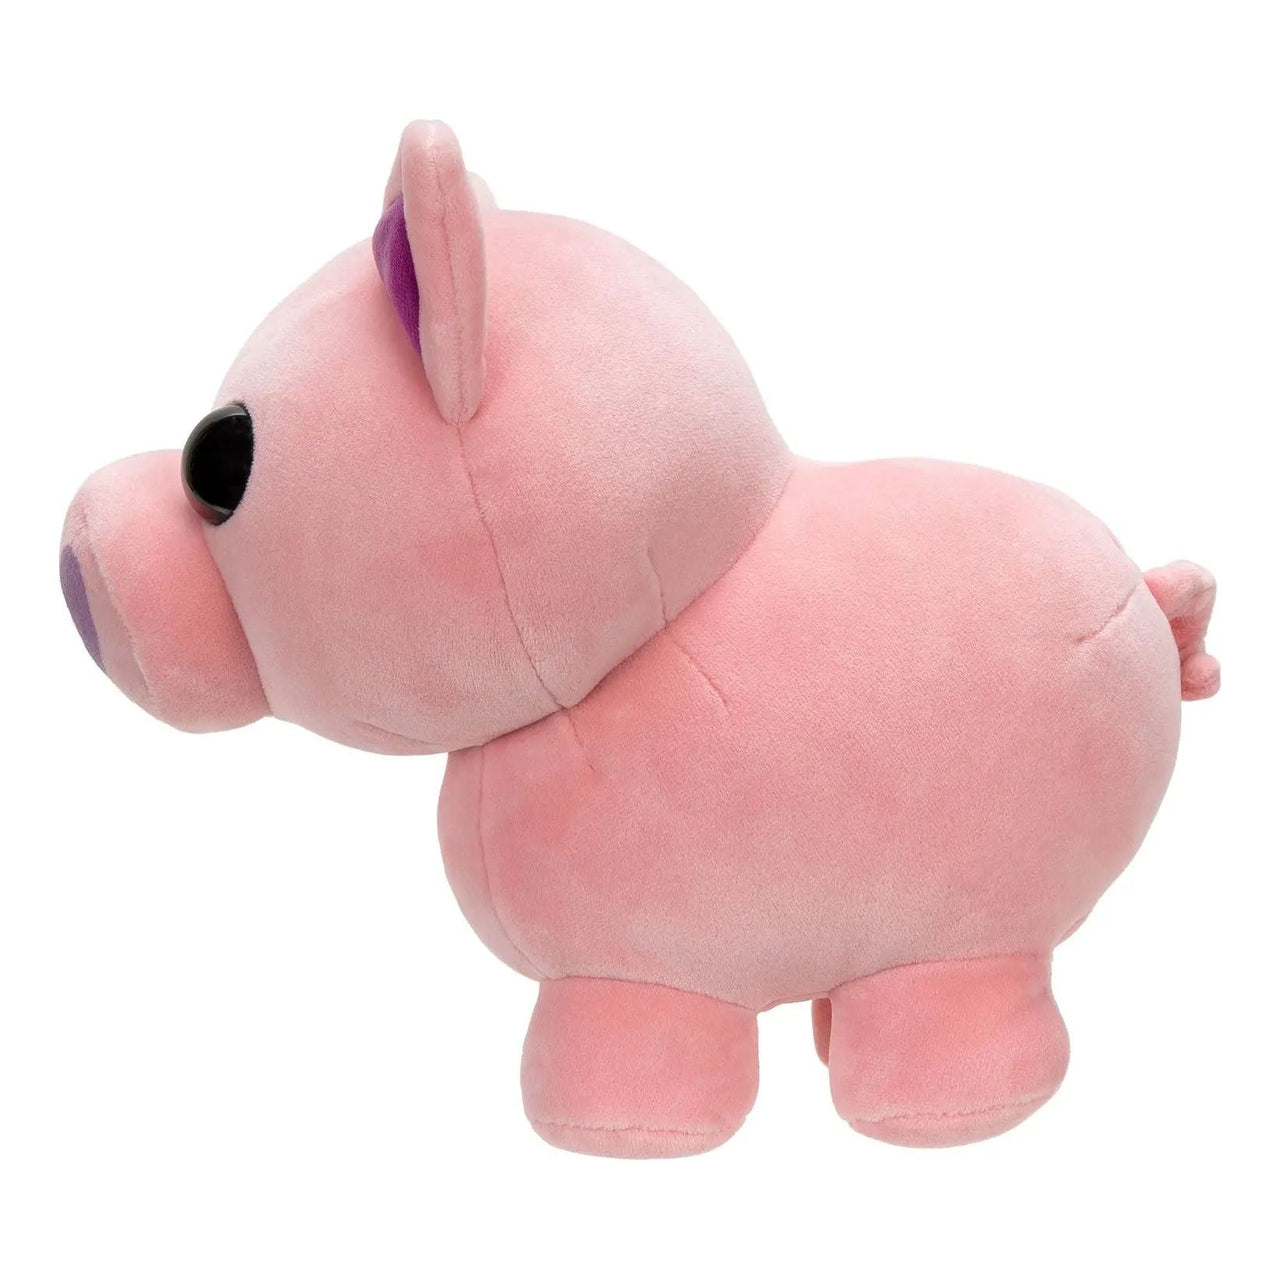 Adopt Me Collector Plush Pig Adopt Me